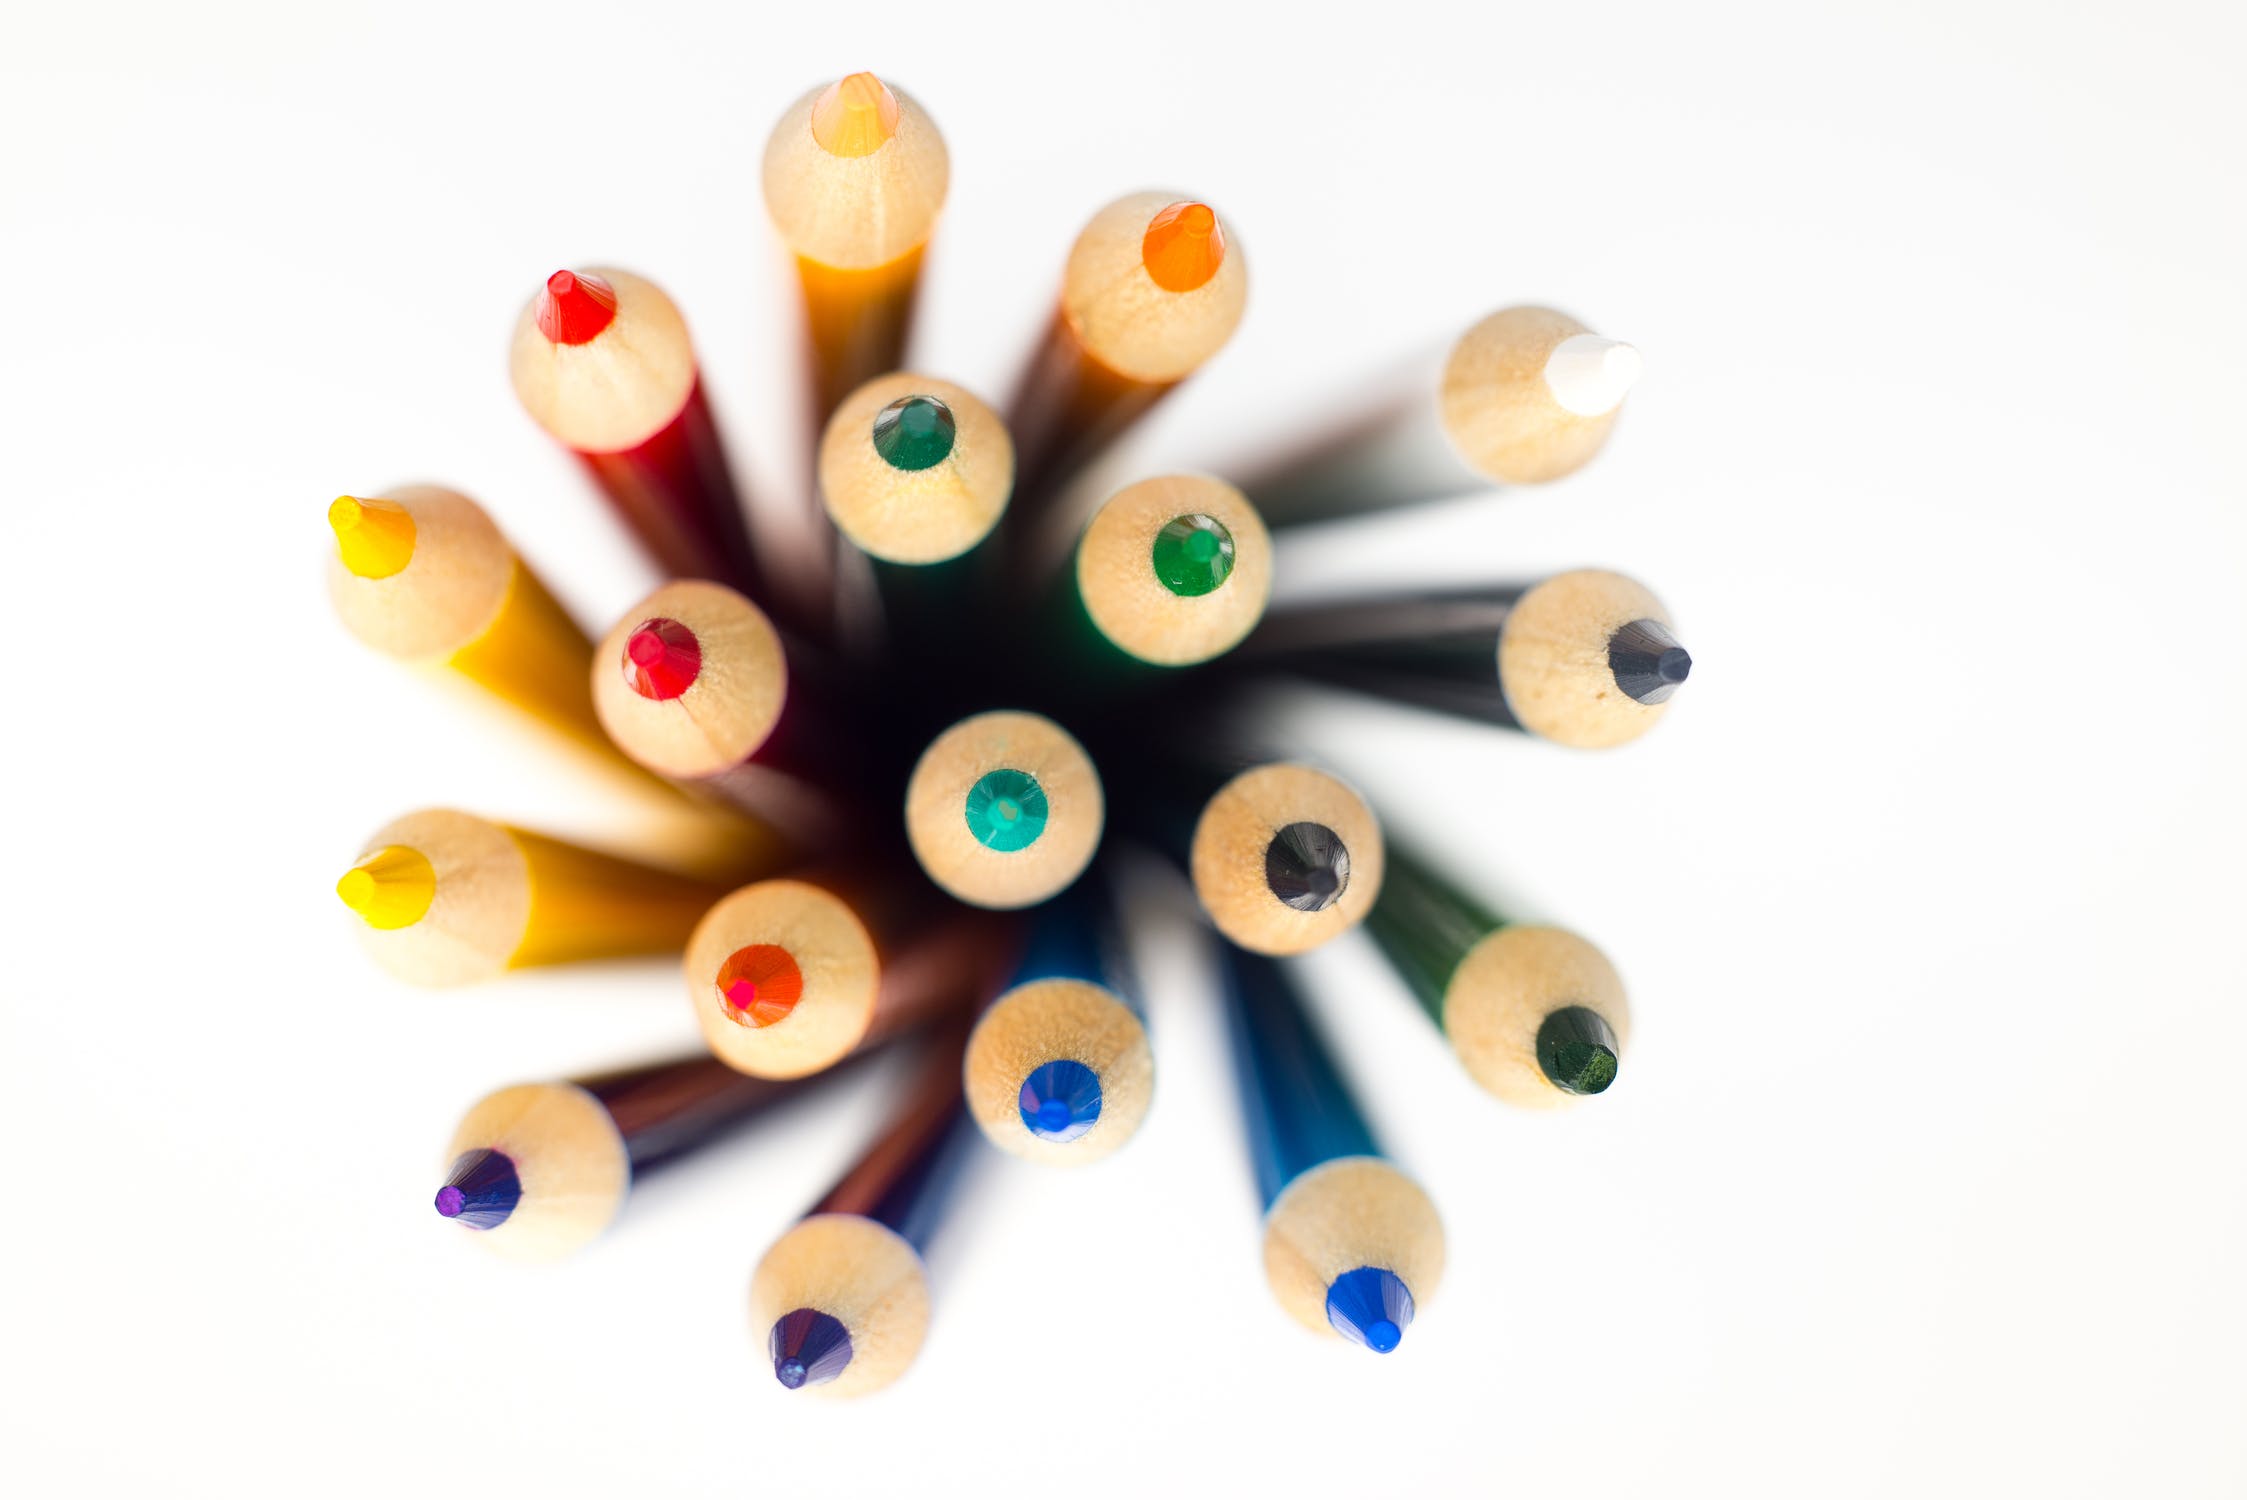 L'image montre des crayons de couleur vus d'en haut. Ceux-ci ont toutes les couleurs possibles et imaginables.